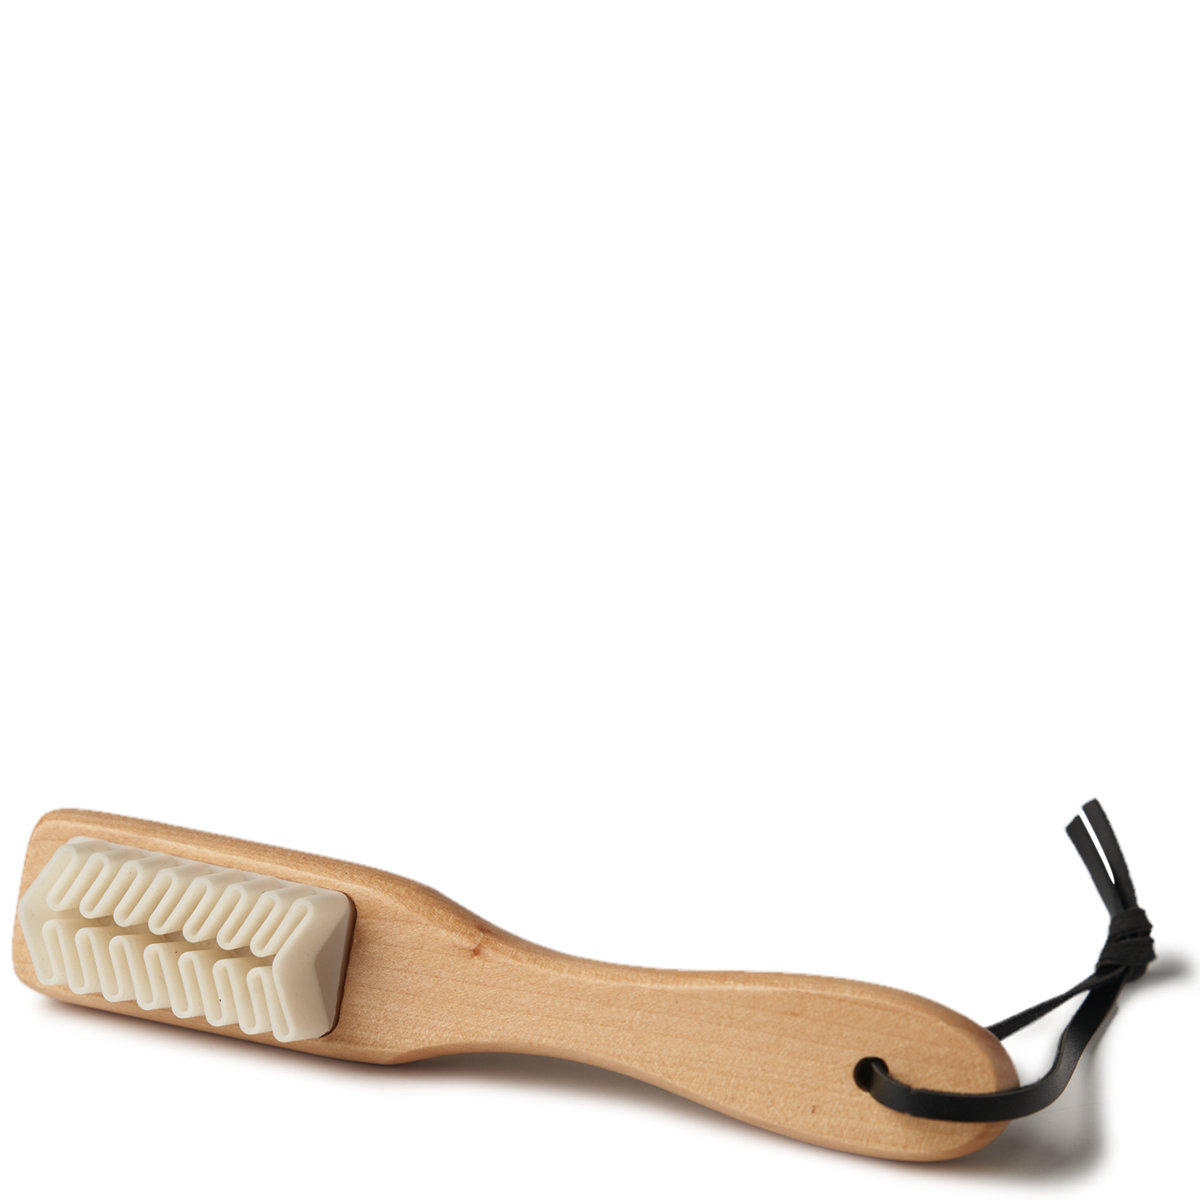 Nubuck Leather Brush